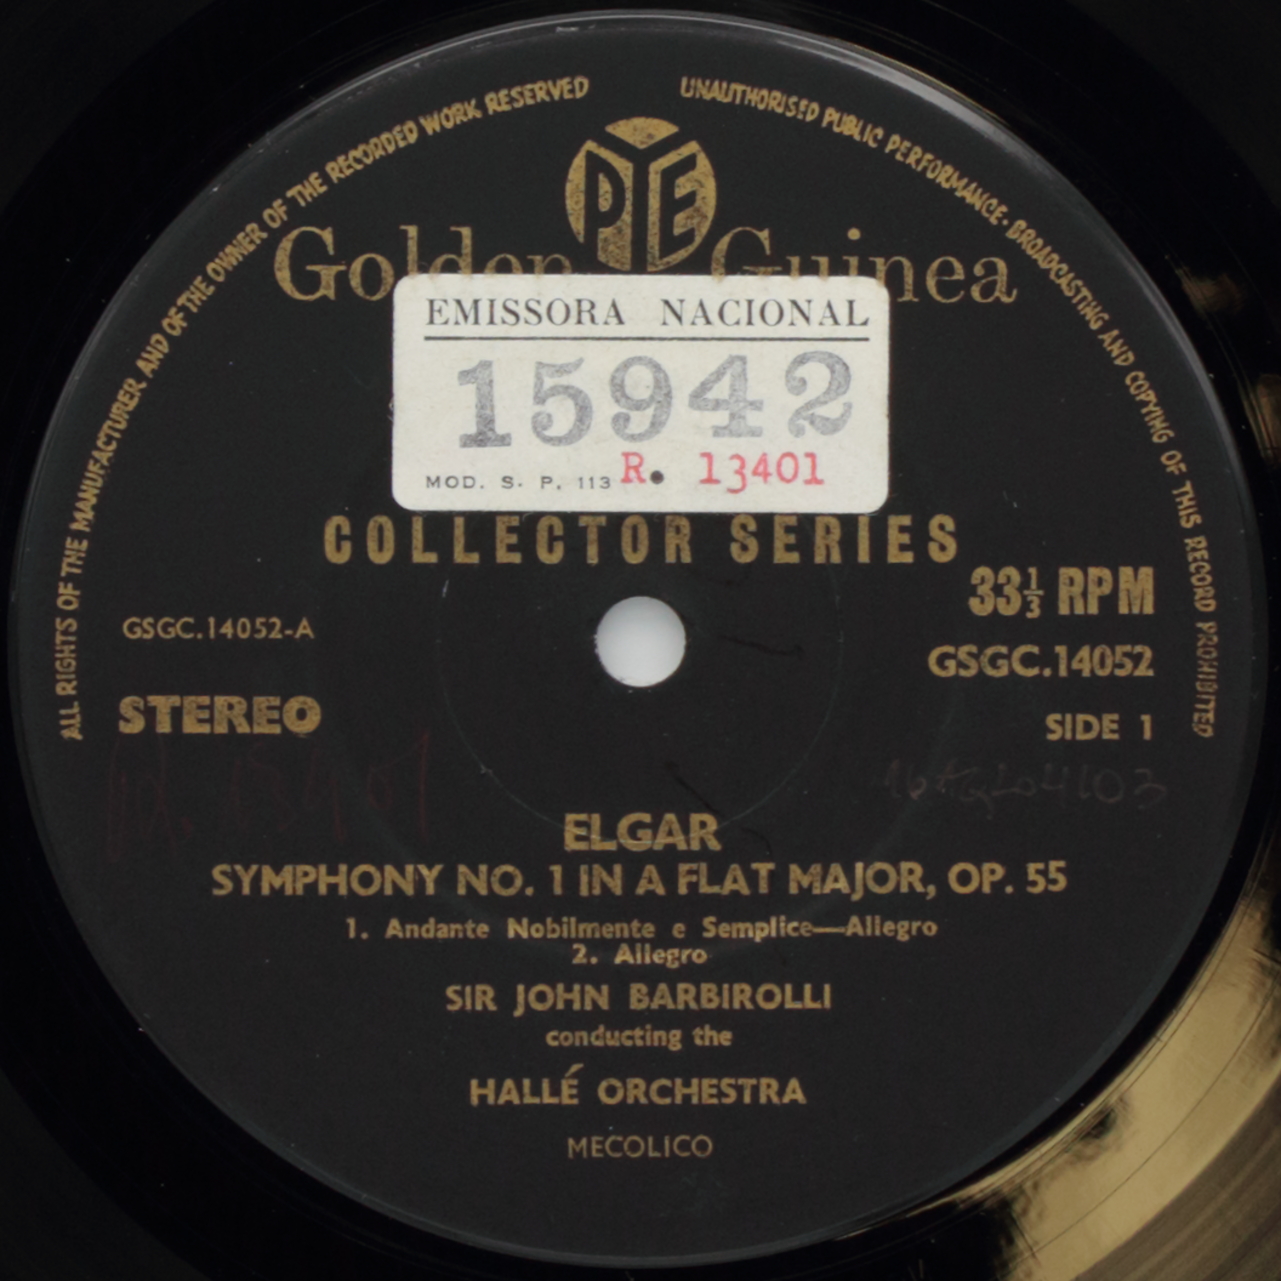 Elgar: Symphony No. 1 in A Flat Major, Op. 55